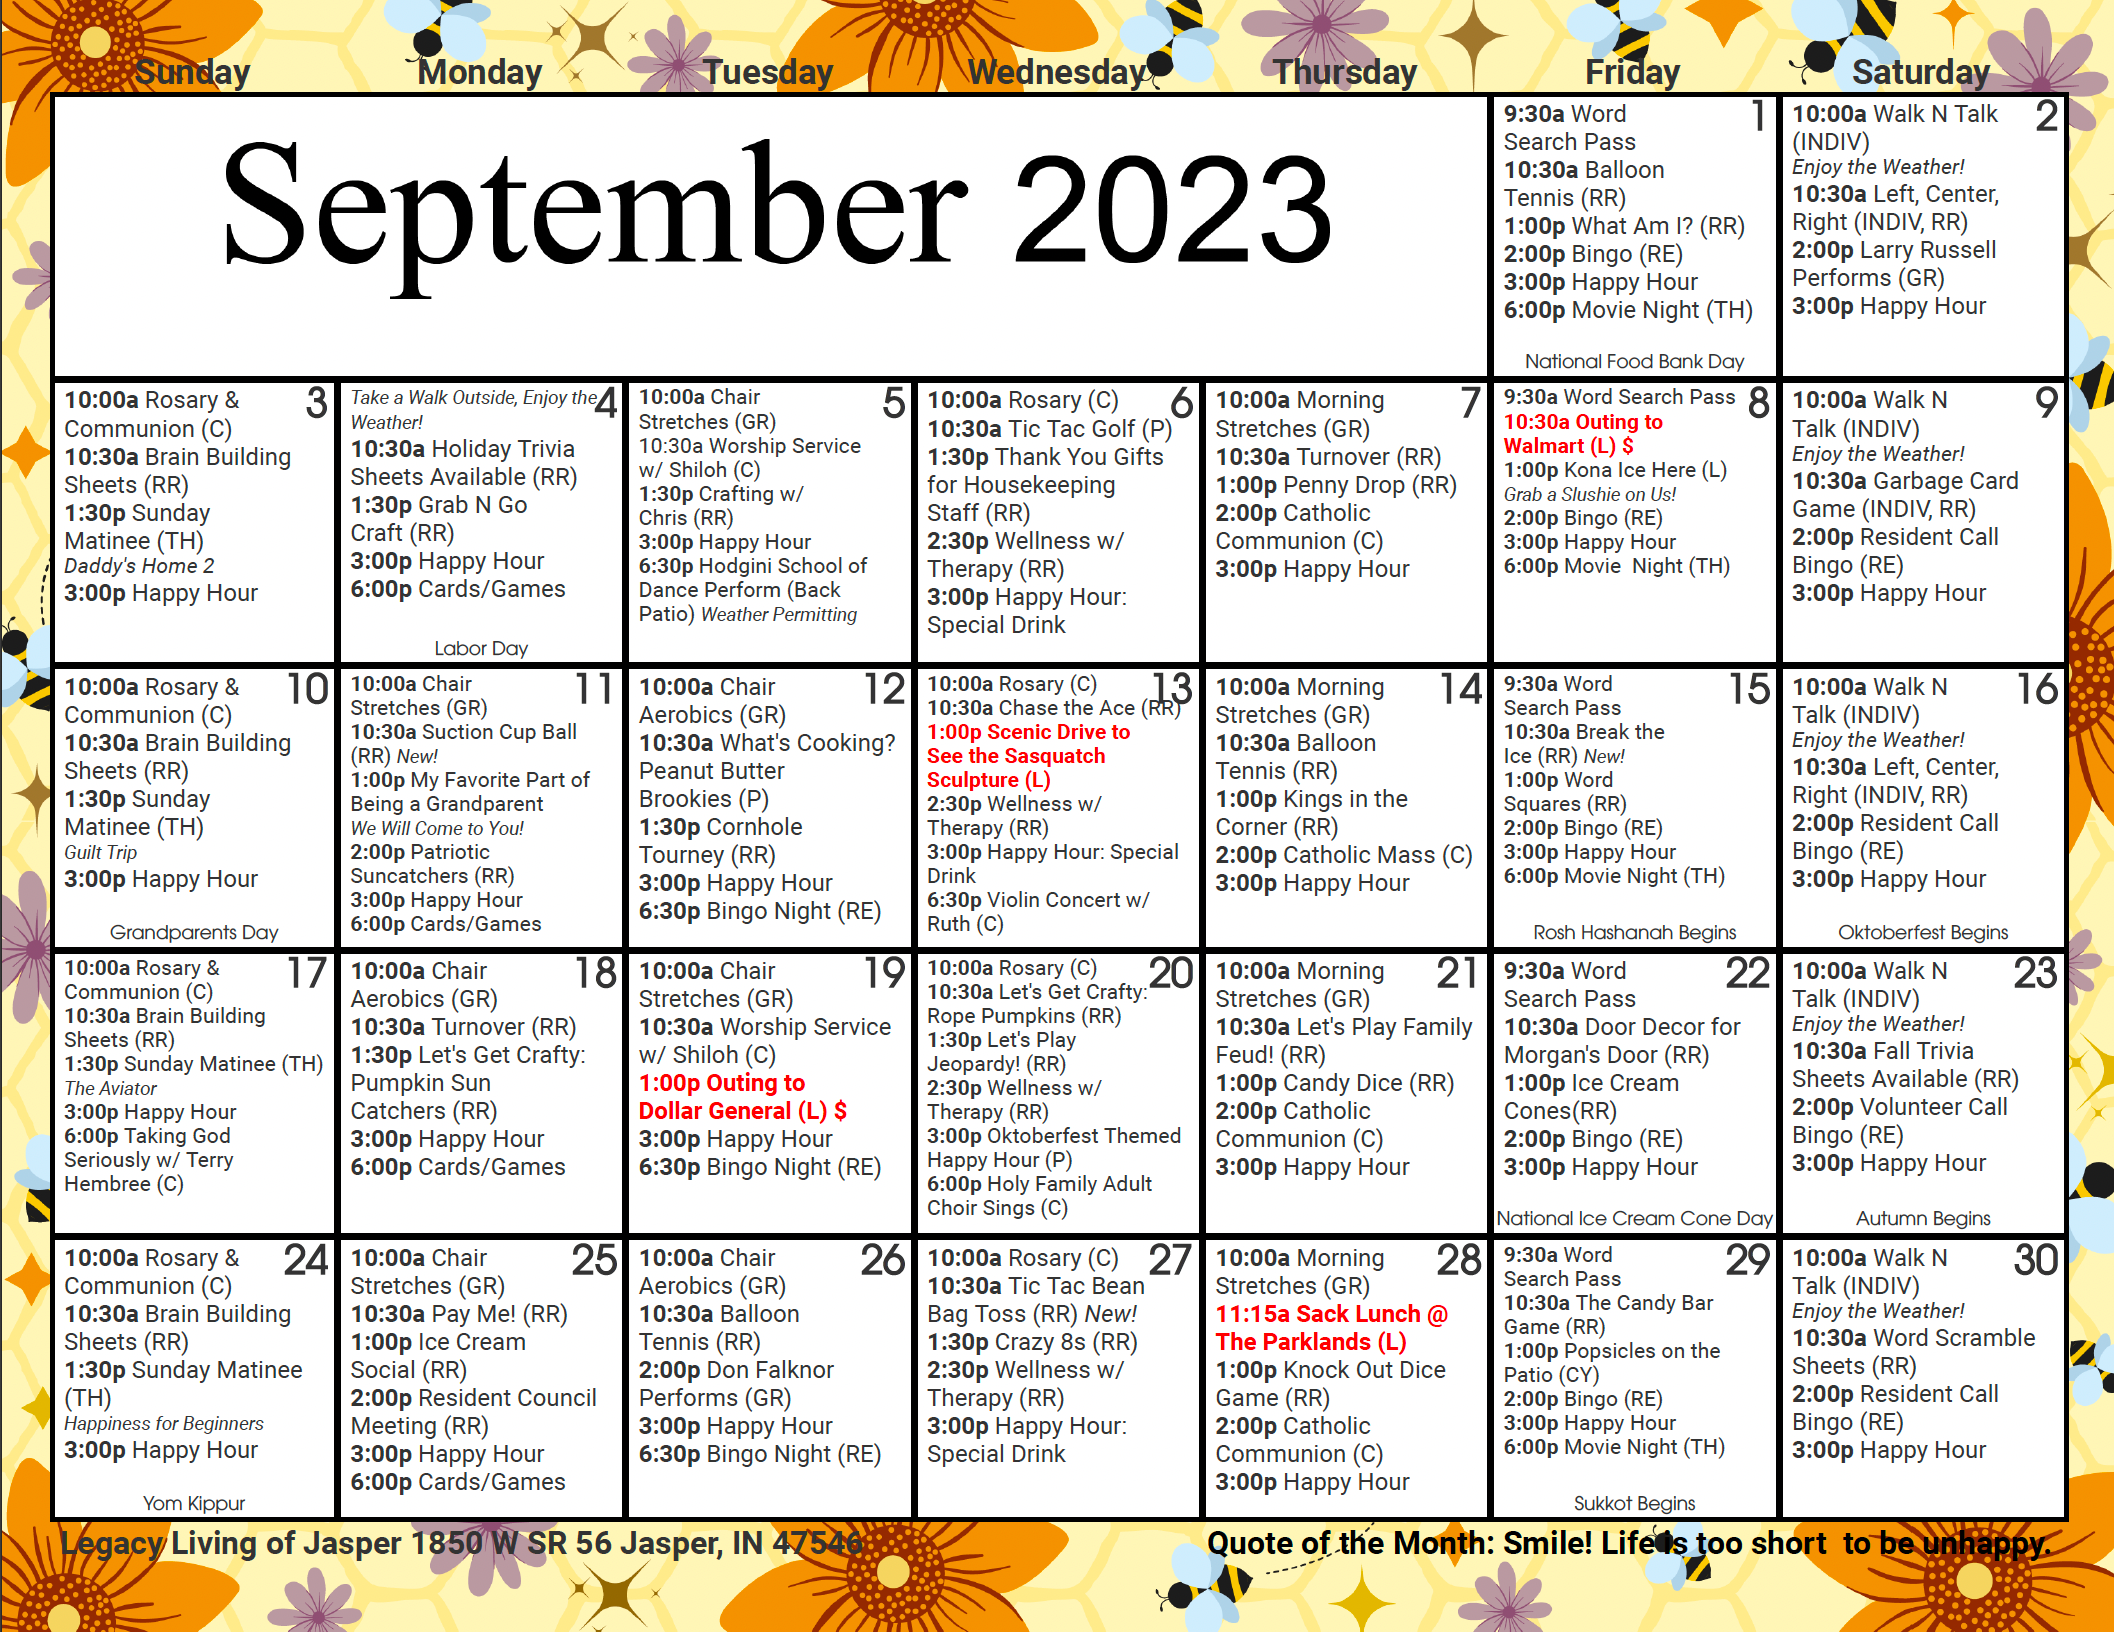 September Calendar at Legacy Living Jasper in Jasper, Indiana